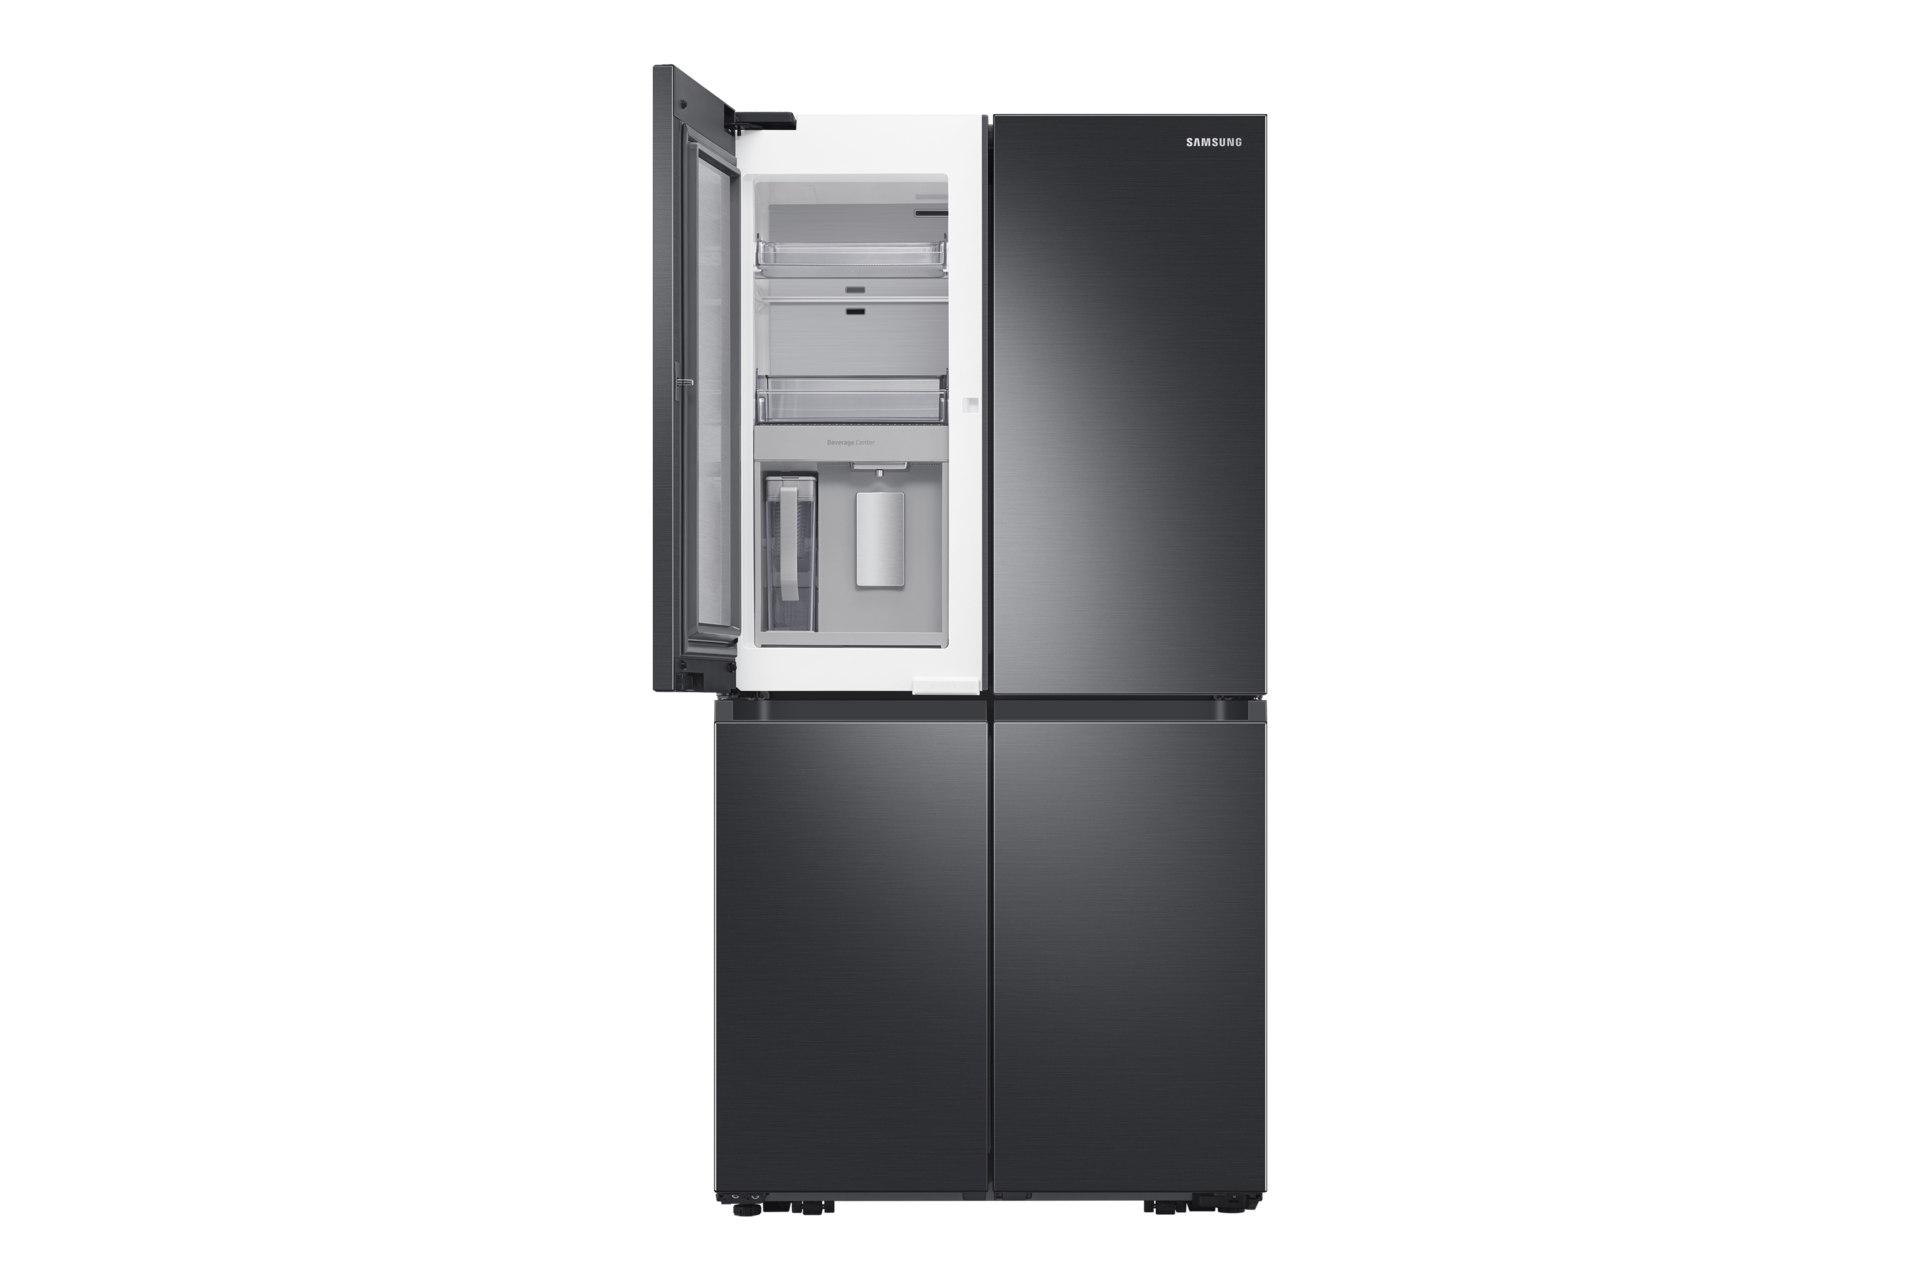 Réfrigérateur LG: avantages, inconvénients, prix et avis